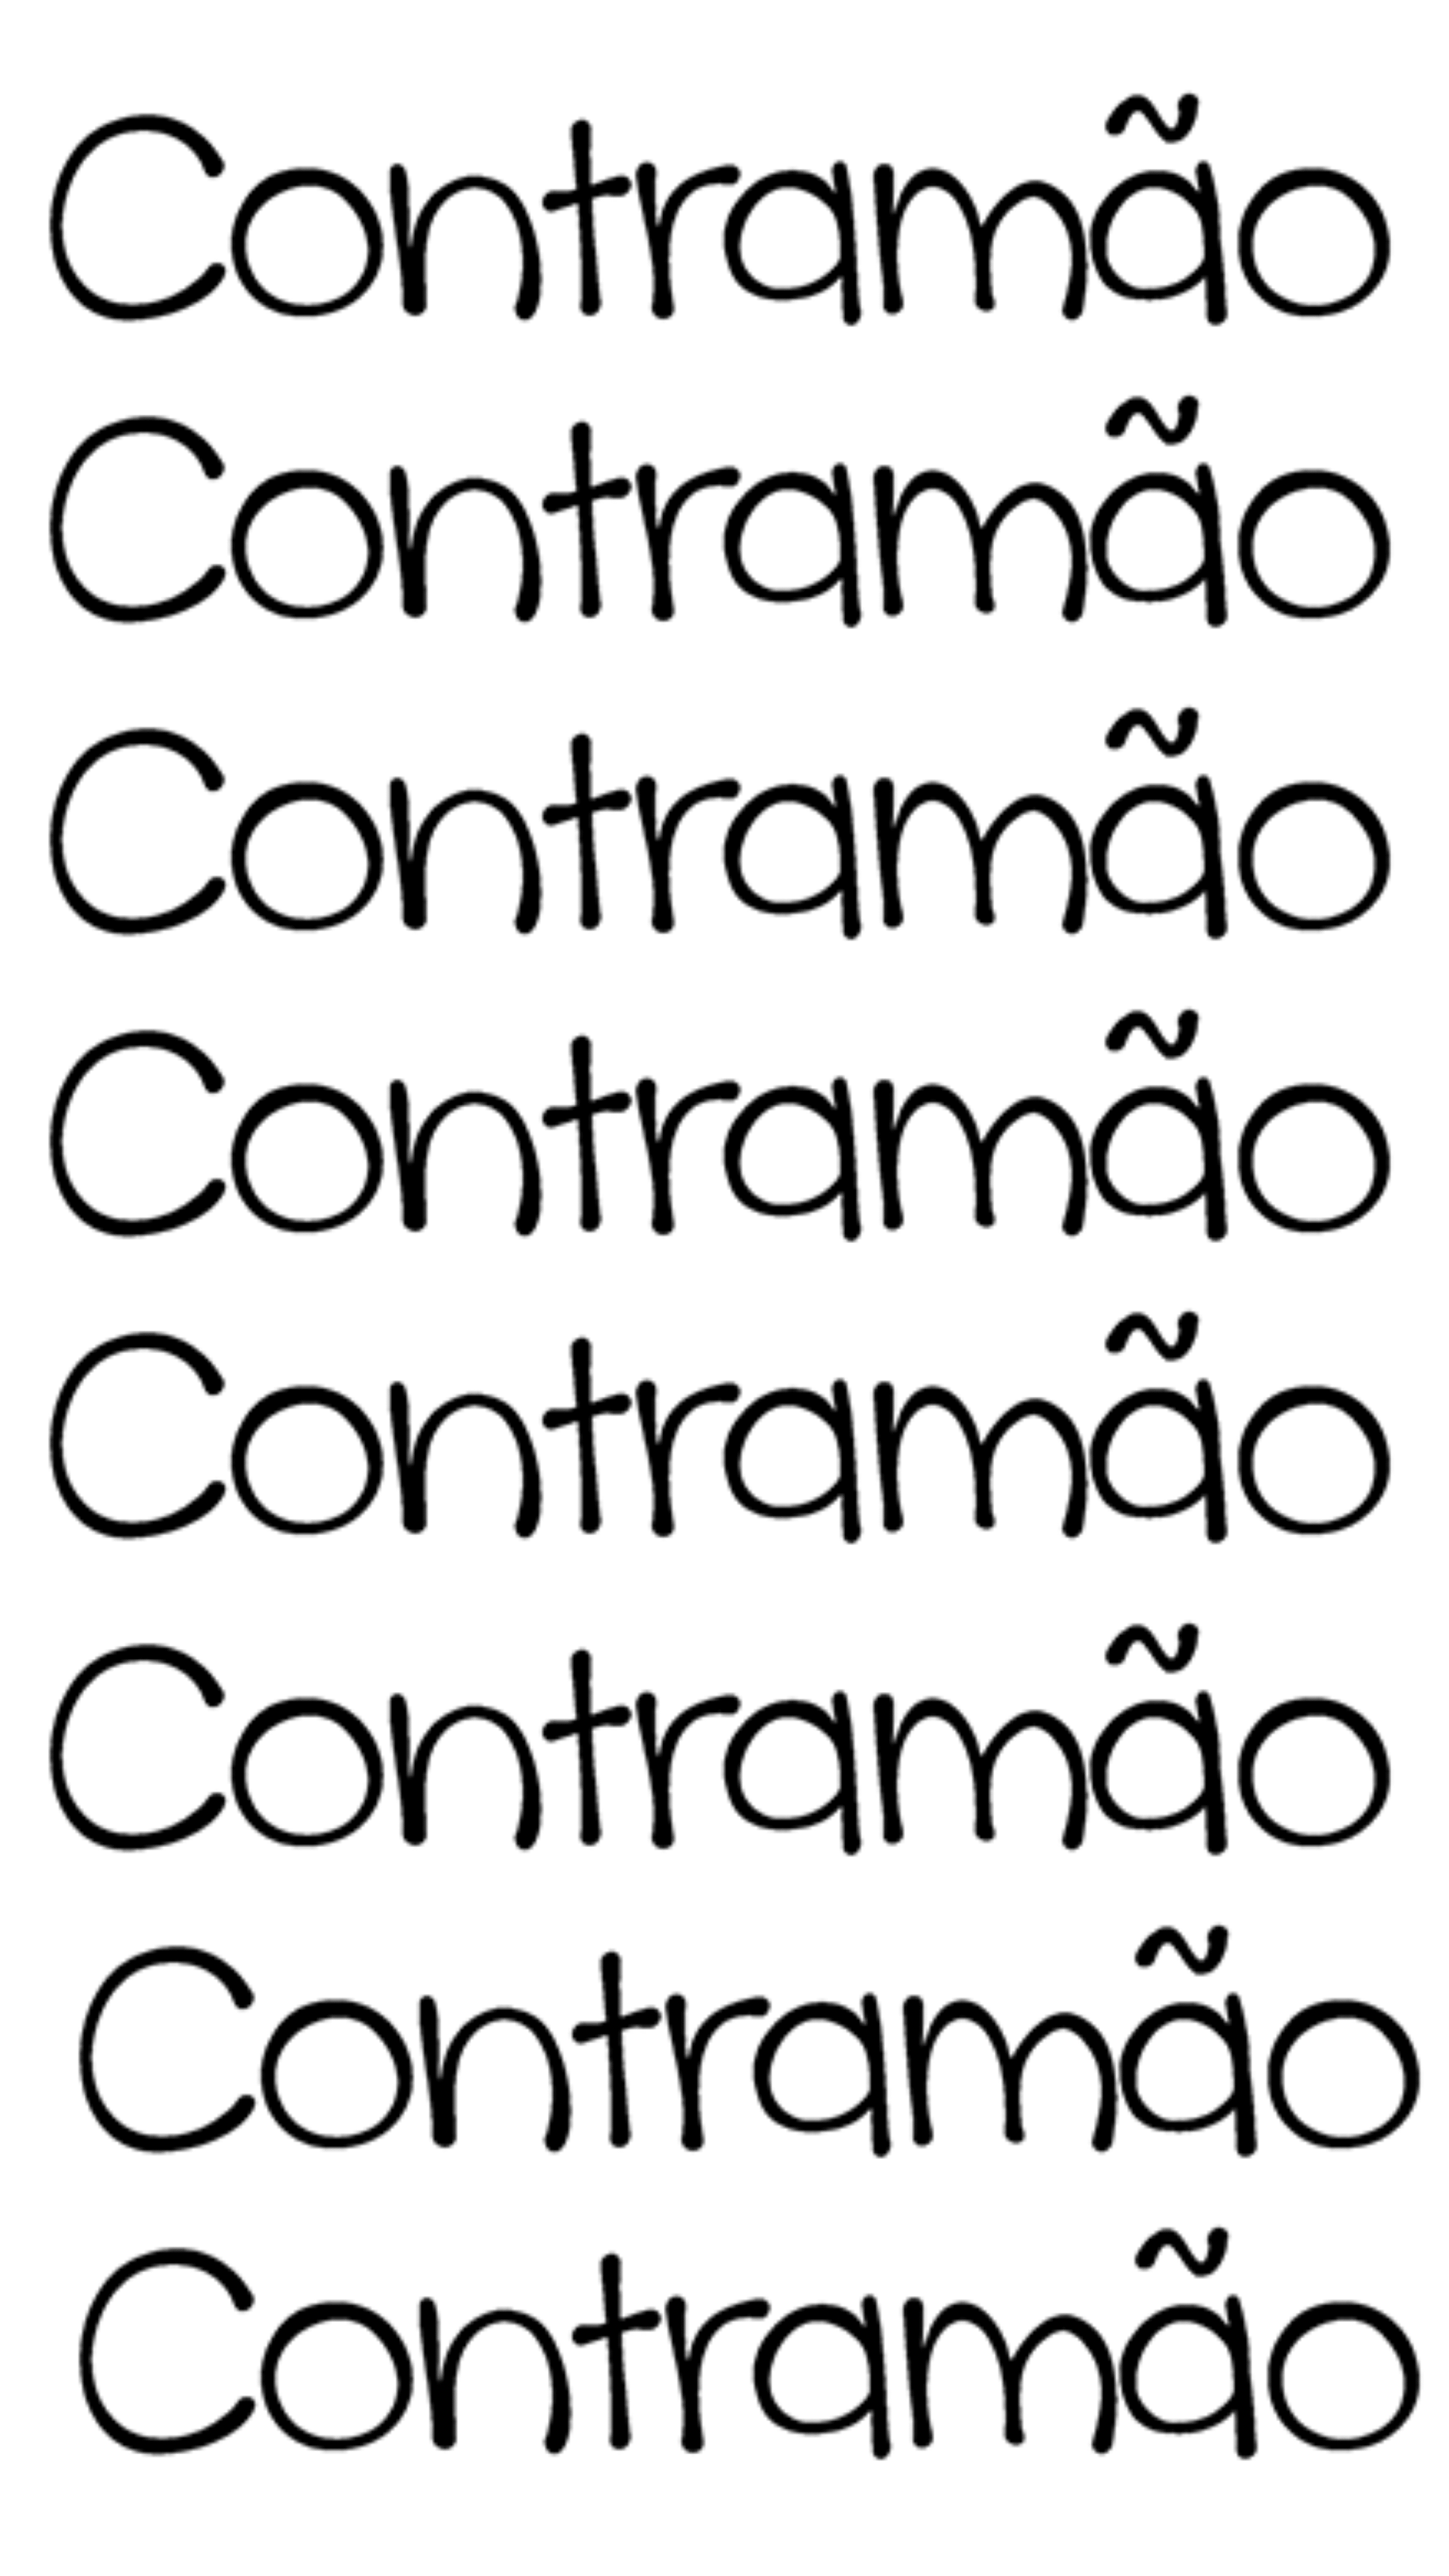 (c) Contramao.com.br